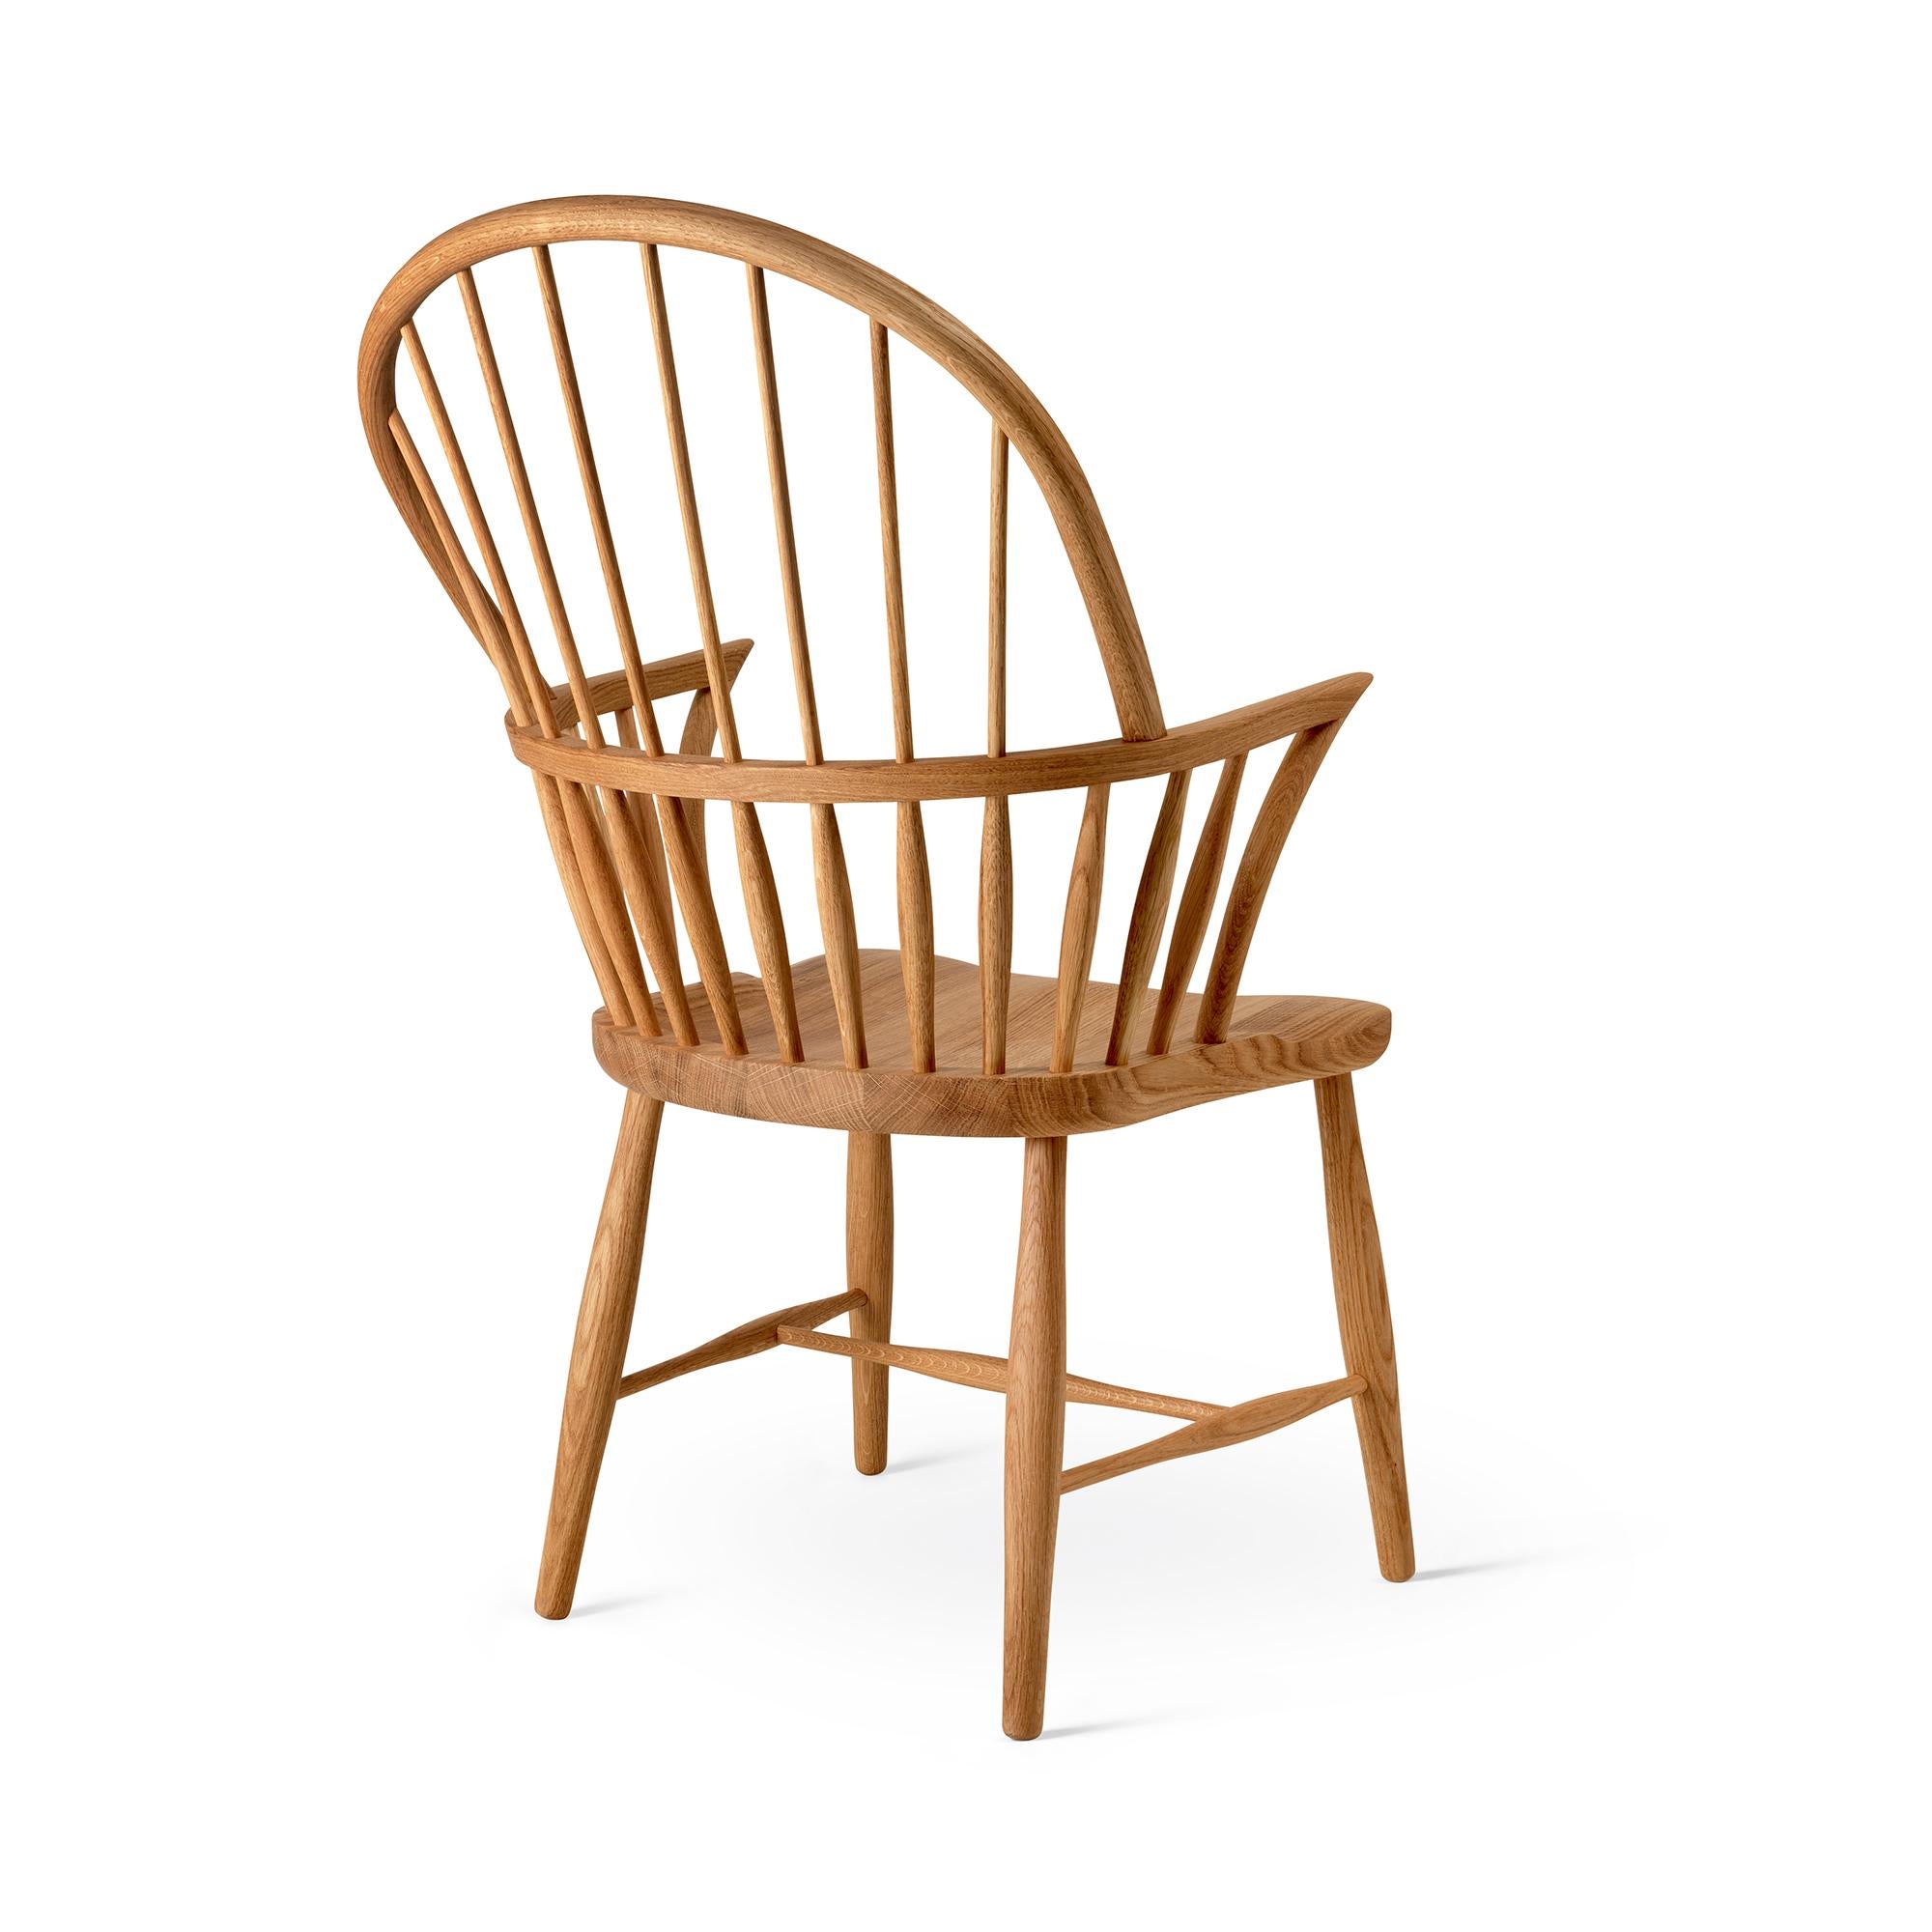 Frits Henningsen 'FH38 Windsor' Chair in Soaped Oak for Carl Hansen & Son For Sale 6